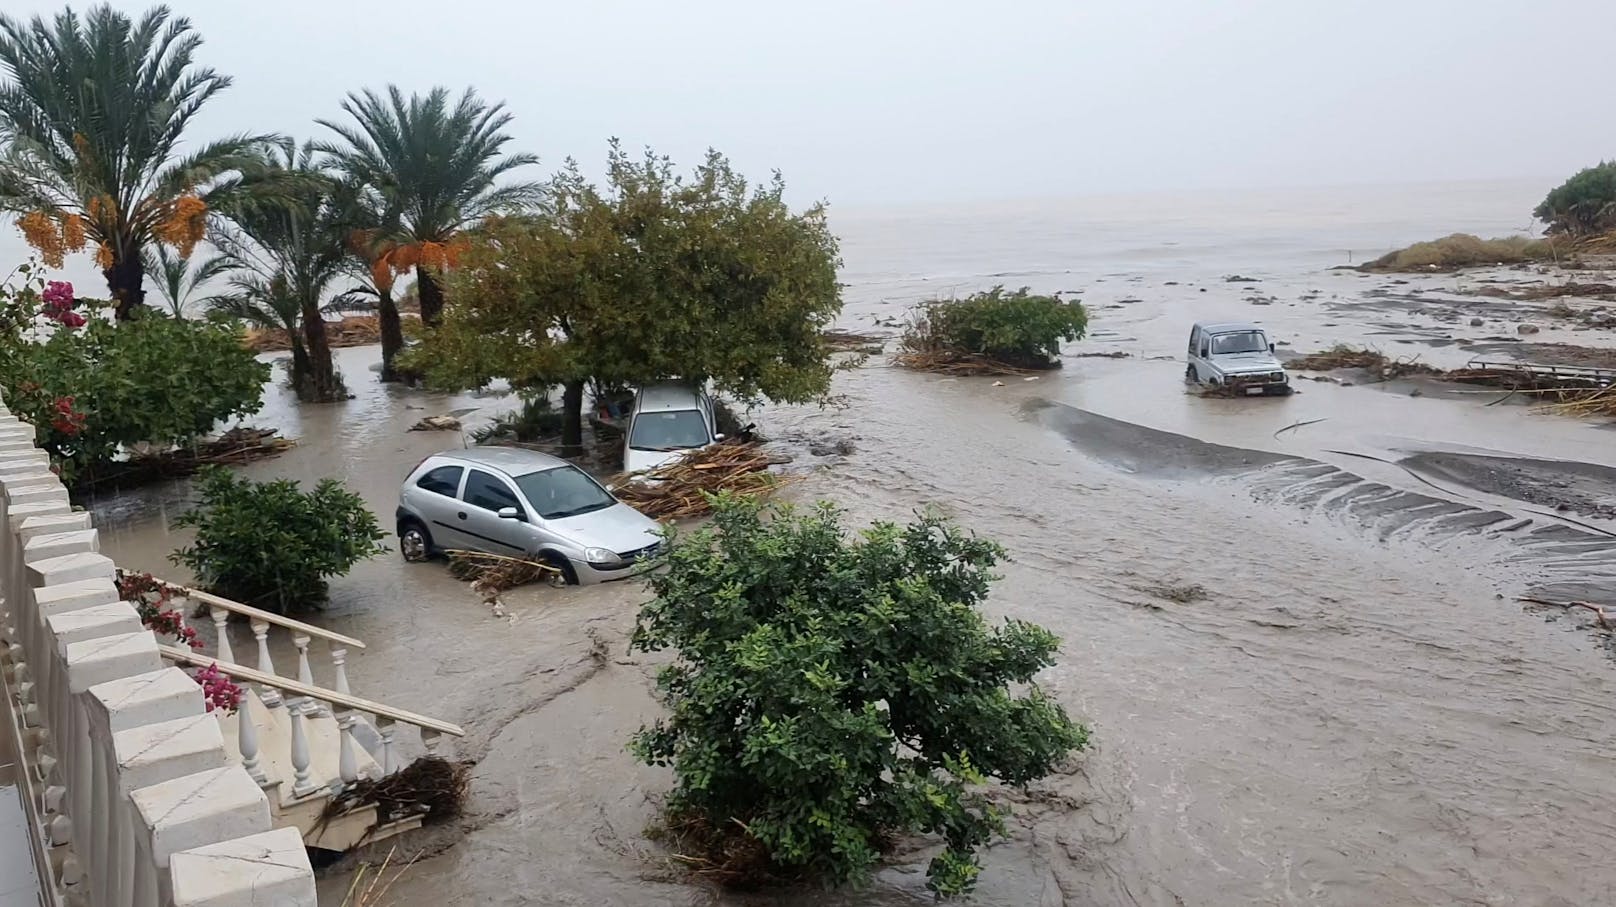 Bilder der Verwüstung nach einem heftigen Unwetter nahe der kretischen Hauptstadt Heraklion am 15. Oktober 2022.